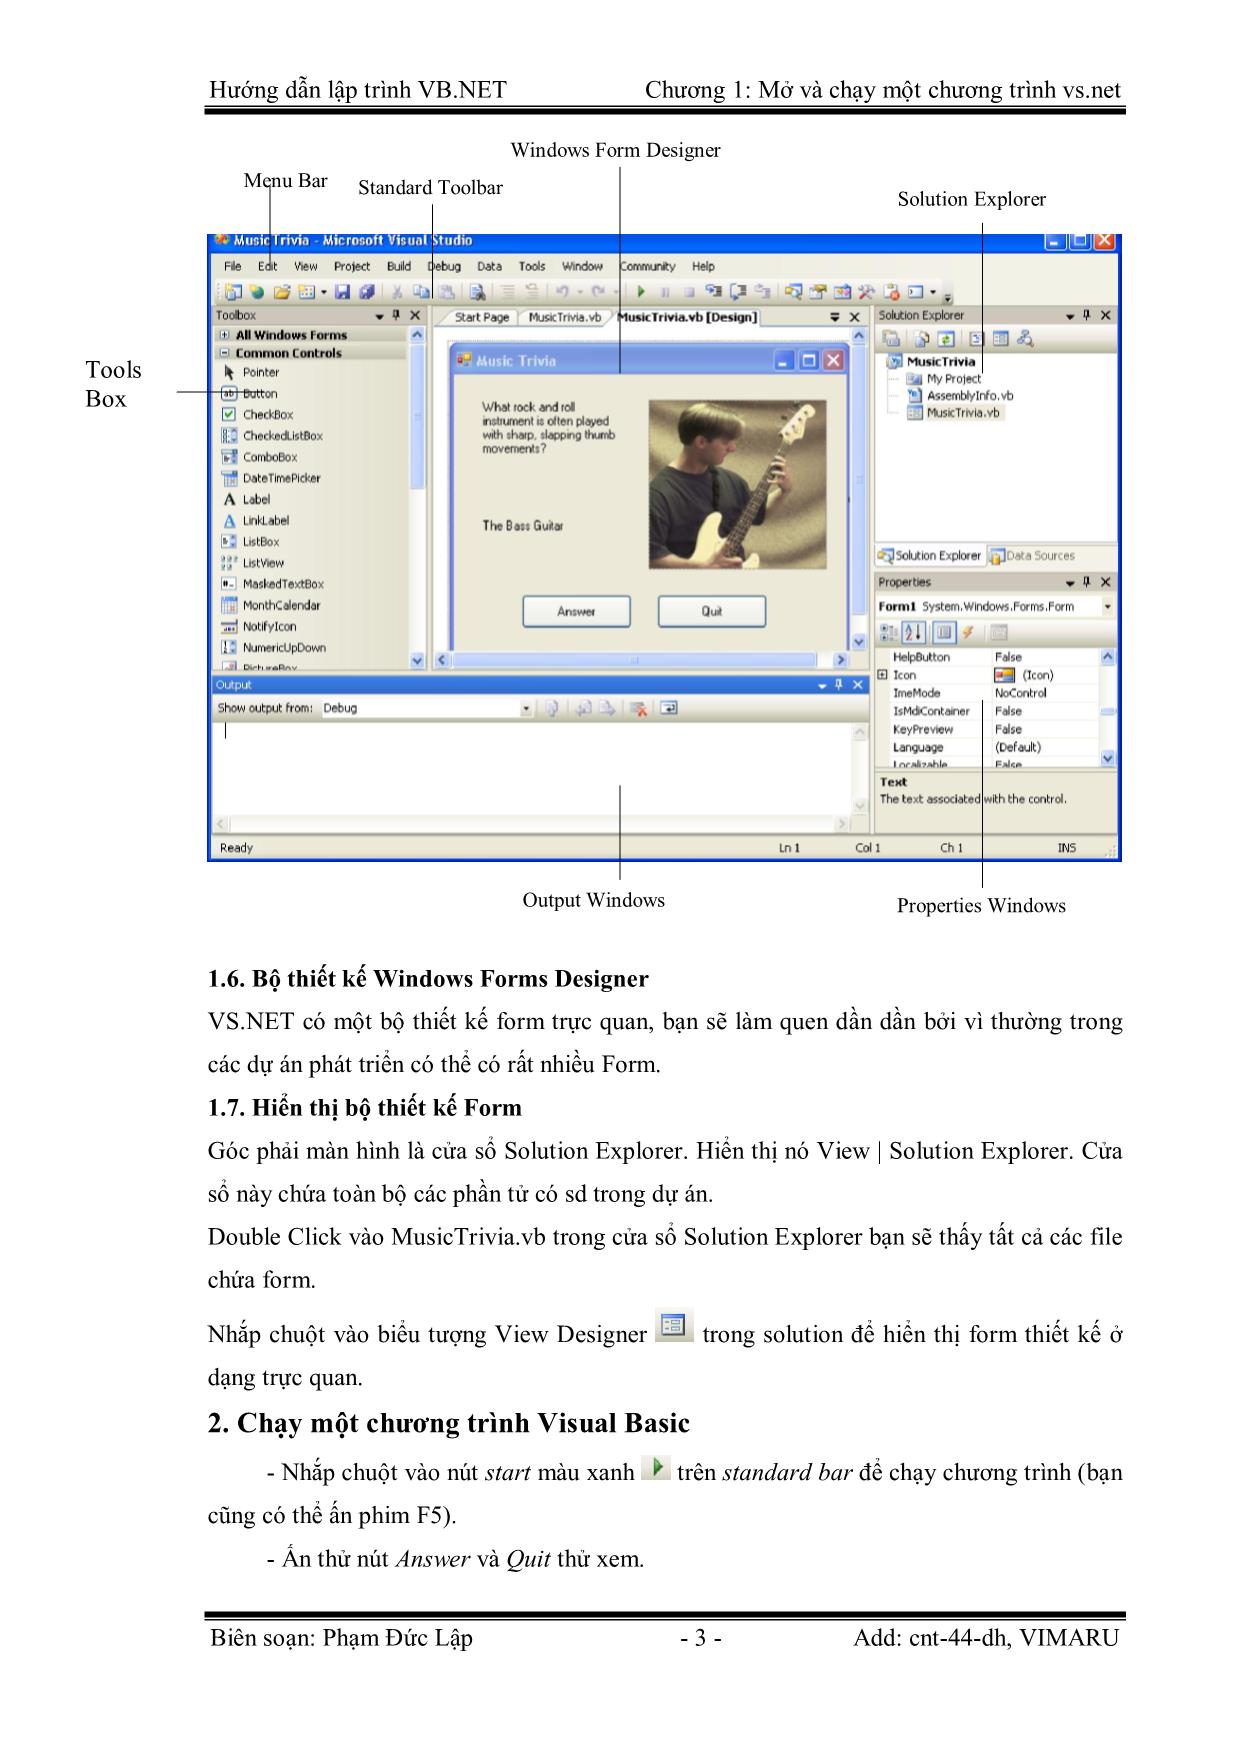 Giáo trình Hướng dẫn lập trình VB.NET - Chương 1: Mở và chạy một chương trình Visual Basic.NET - Phạm Đức Lập trang 3